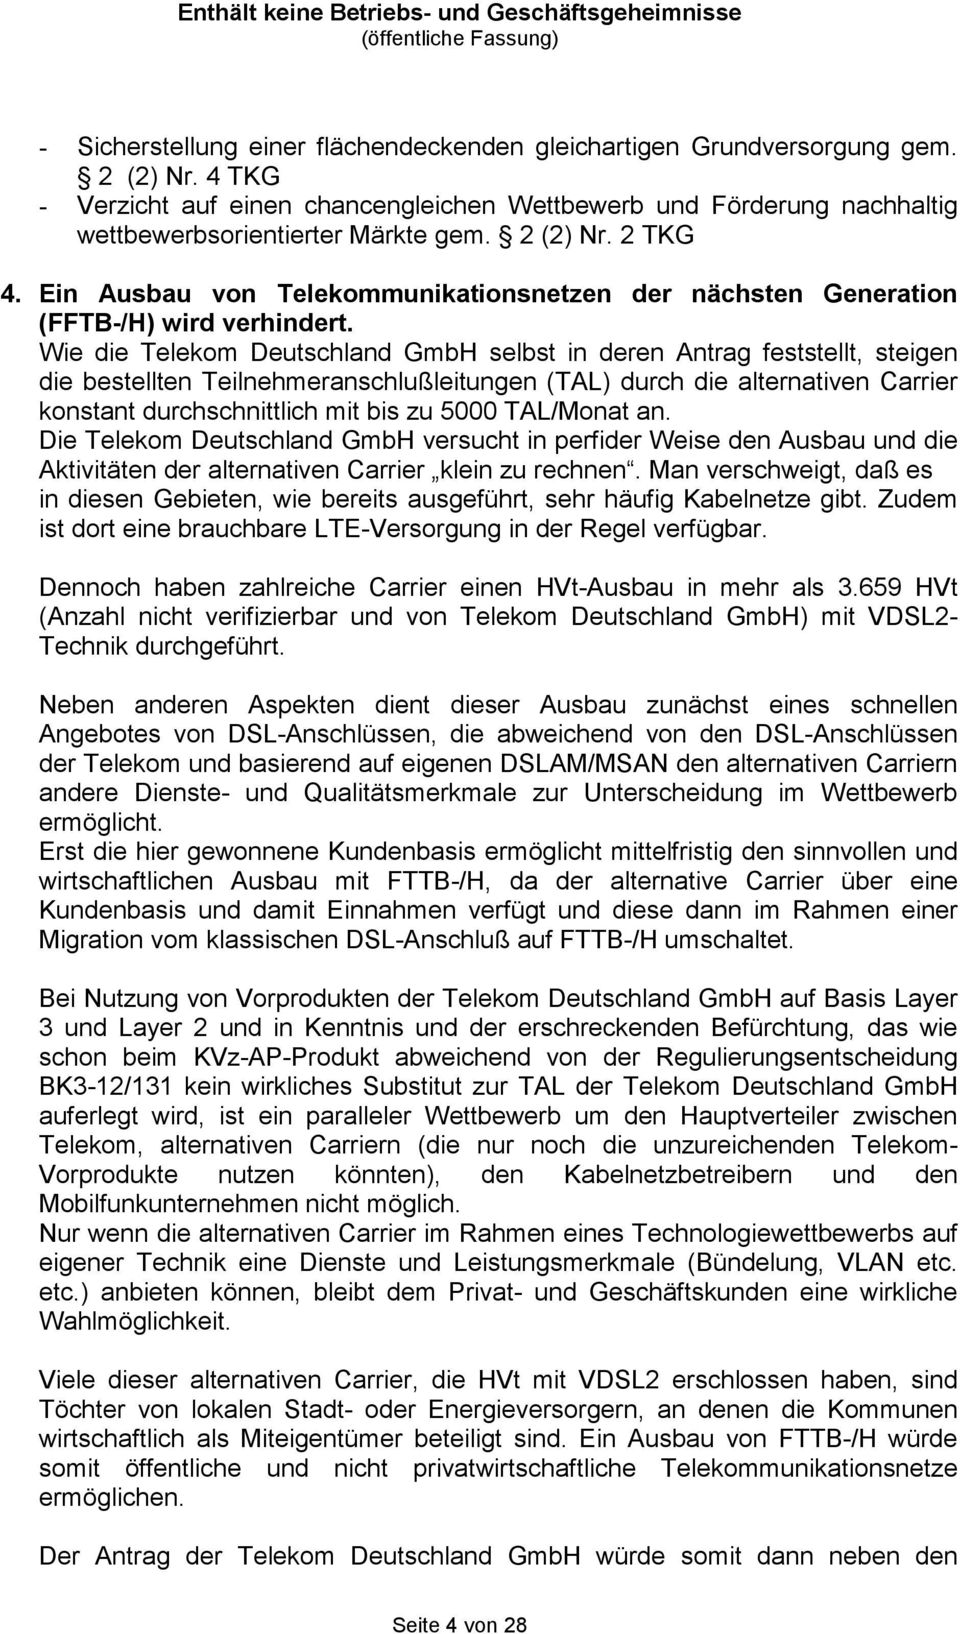 Wie die Telekom Deutschland GmbH selbst in deren Antrag feststellt, steigen die bestellten Teilnehmeranschlußleitungen (TAL) durch die alternativen Carrier konstant durchschnittlich mit bis zu 5000